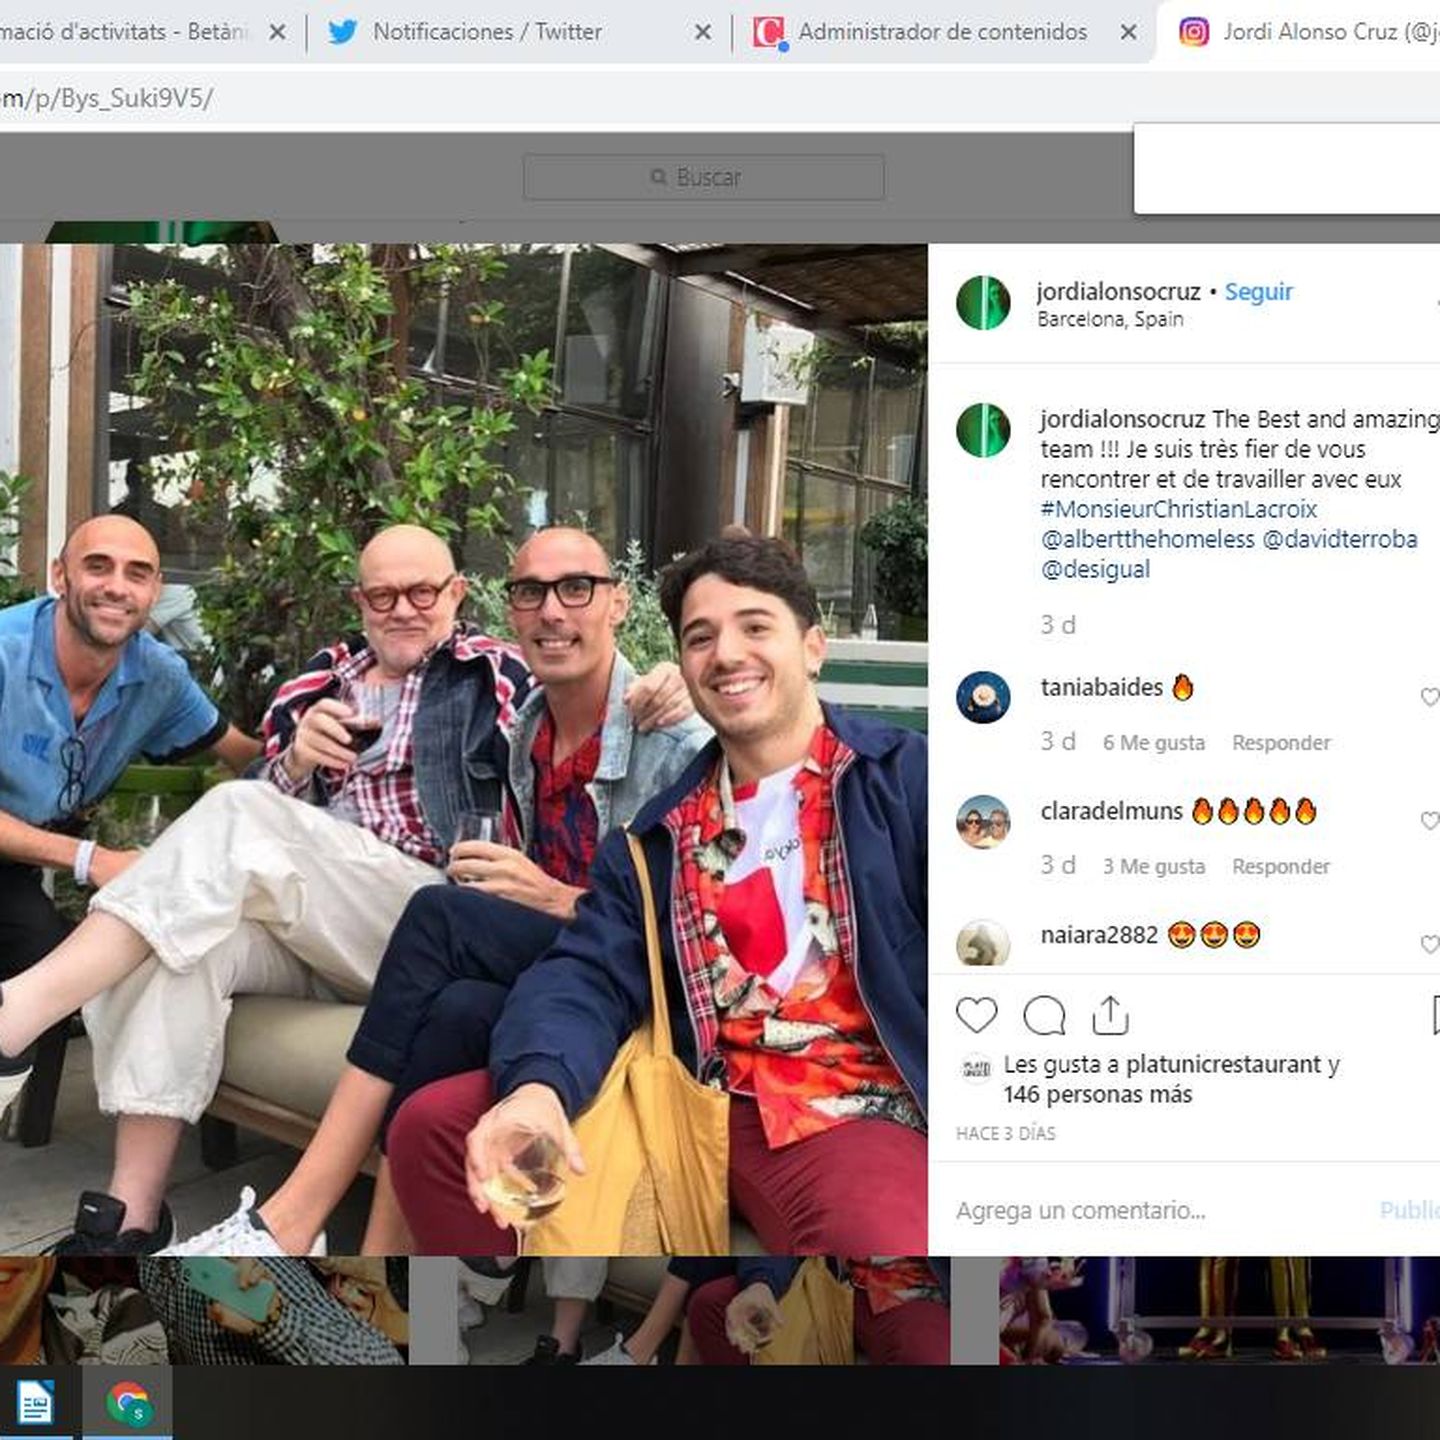 Christian Lacroix (centro, copa en mano) en la fiesta de Desigual. (Instagram)